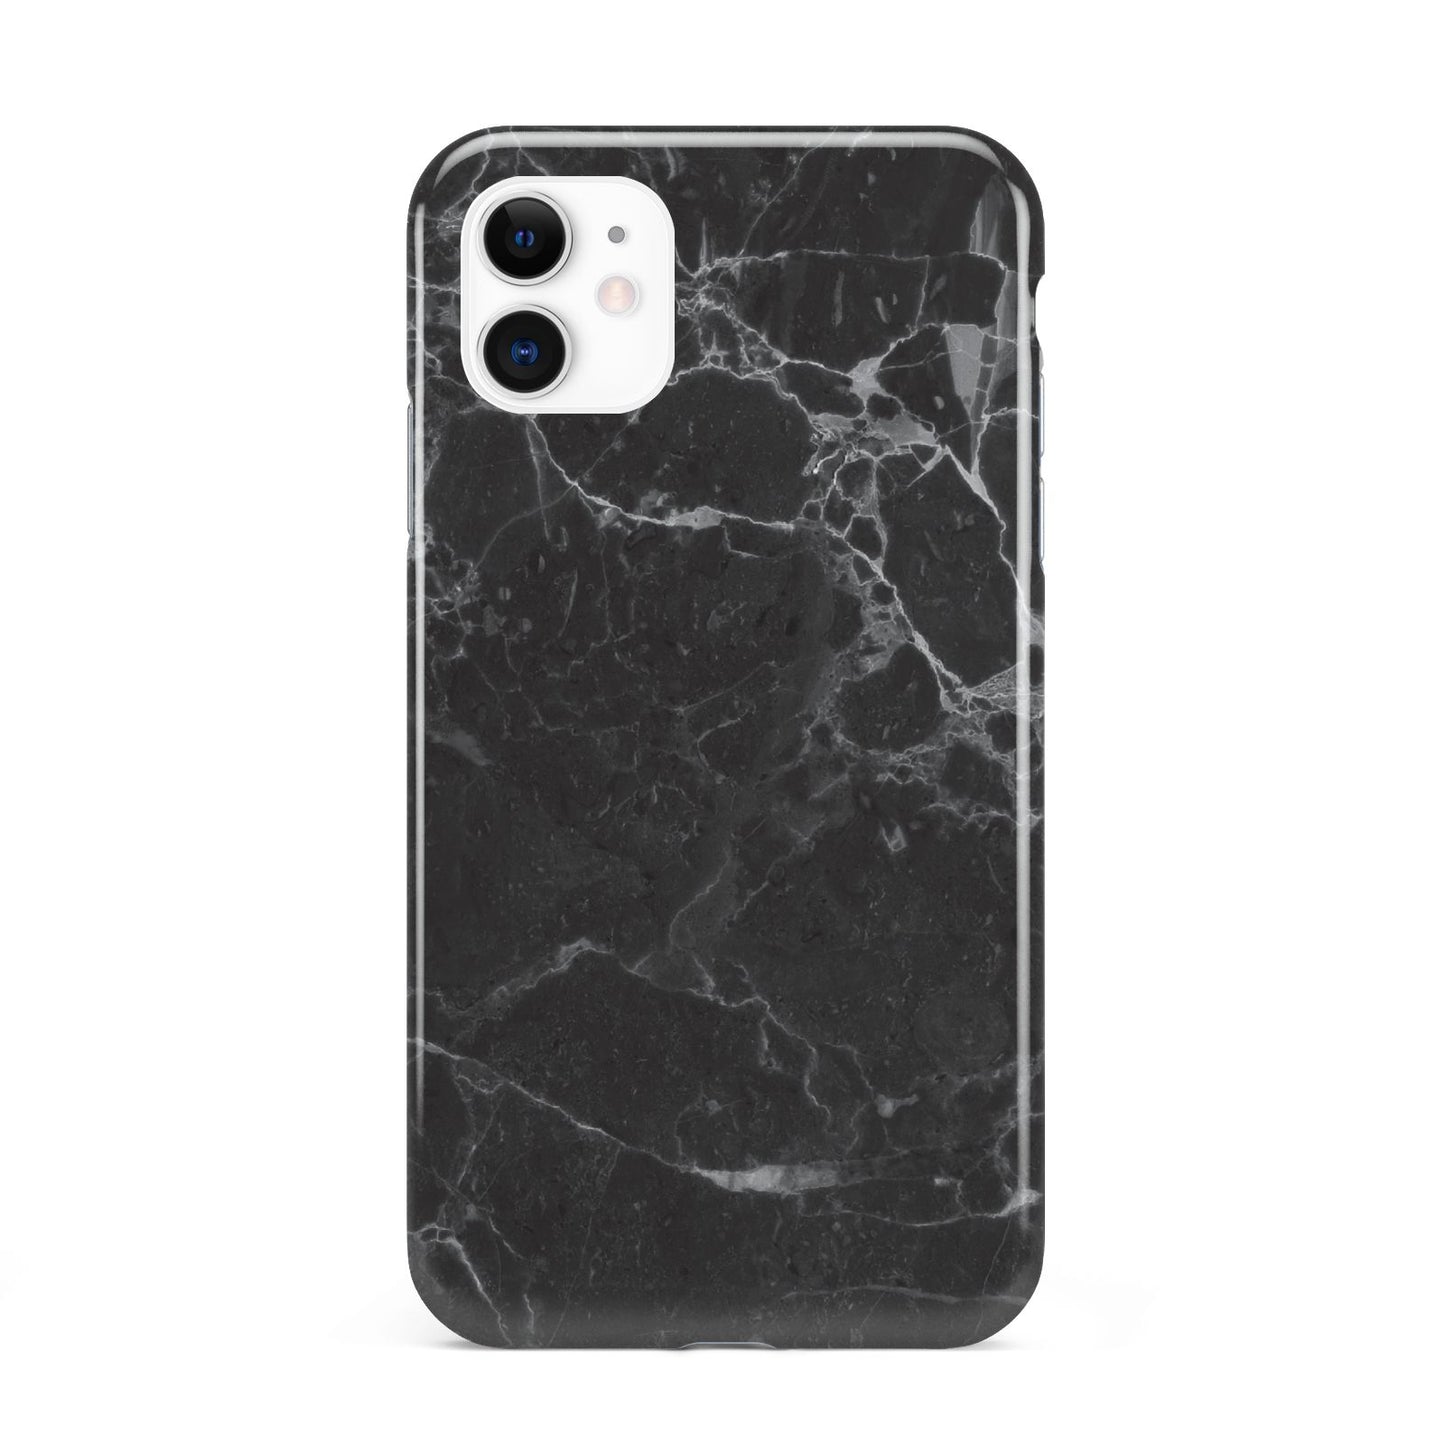 Faux Marble Effect Black iPhone 11 3D Tough Case